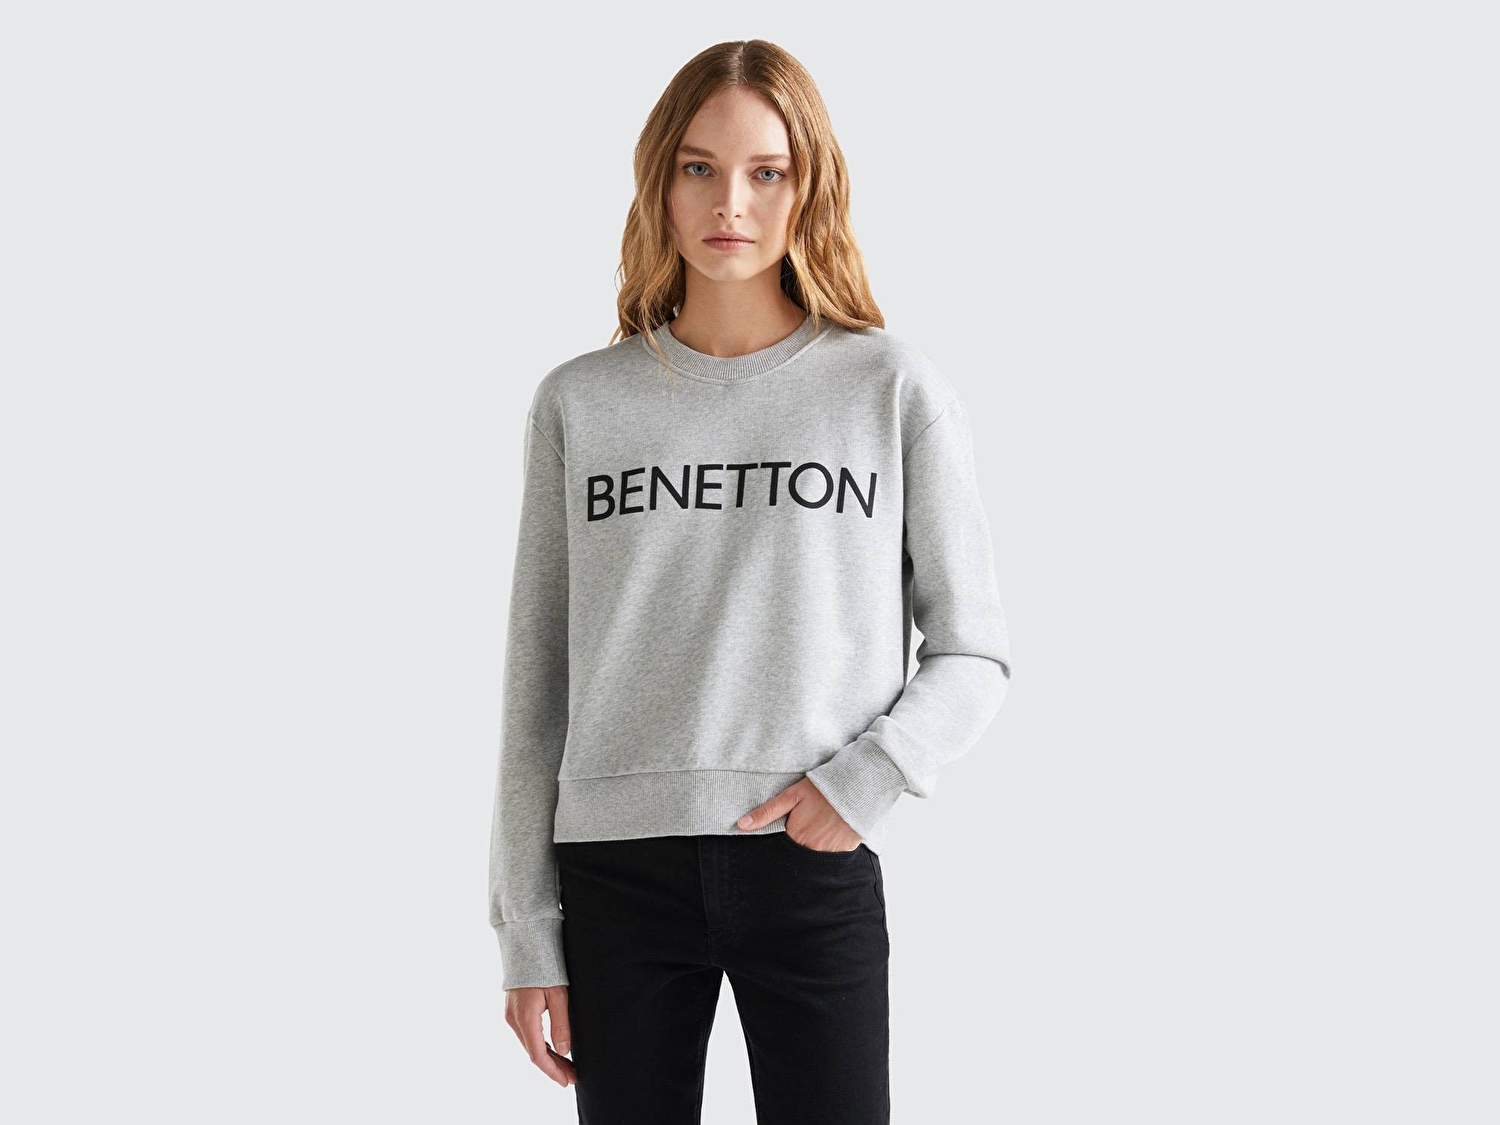 Benetton Kadın Gri Melanj %100 Koton Rahat Kalıp Benetton Yazılı Sweatshirt